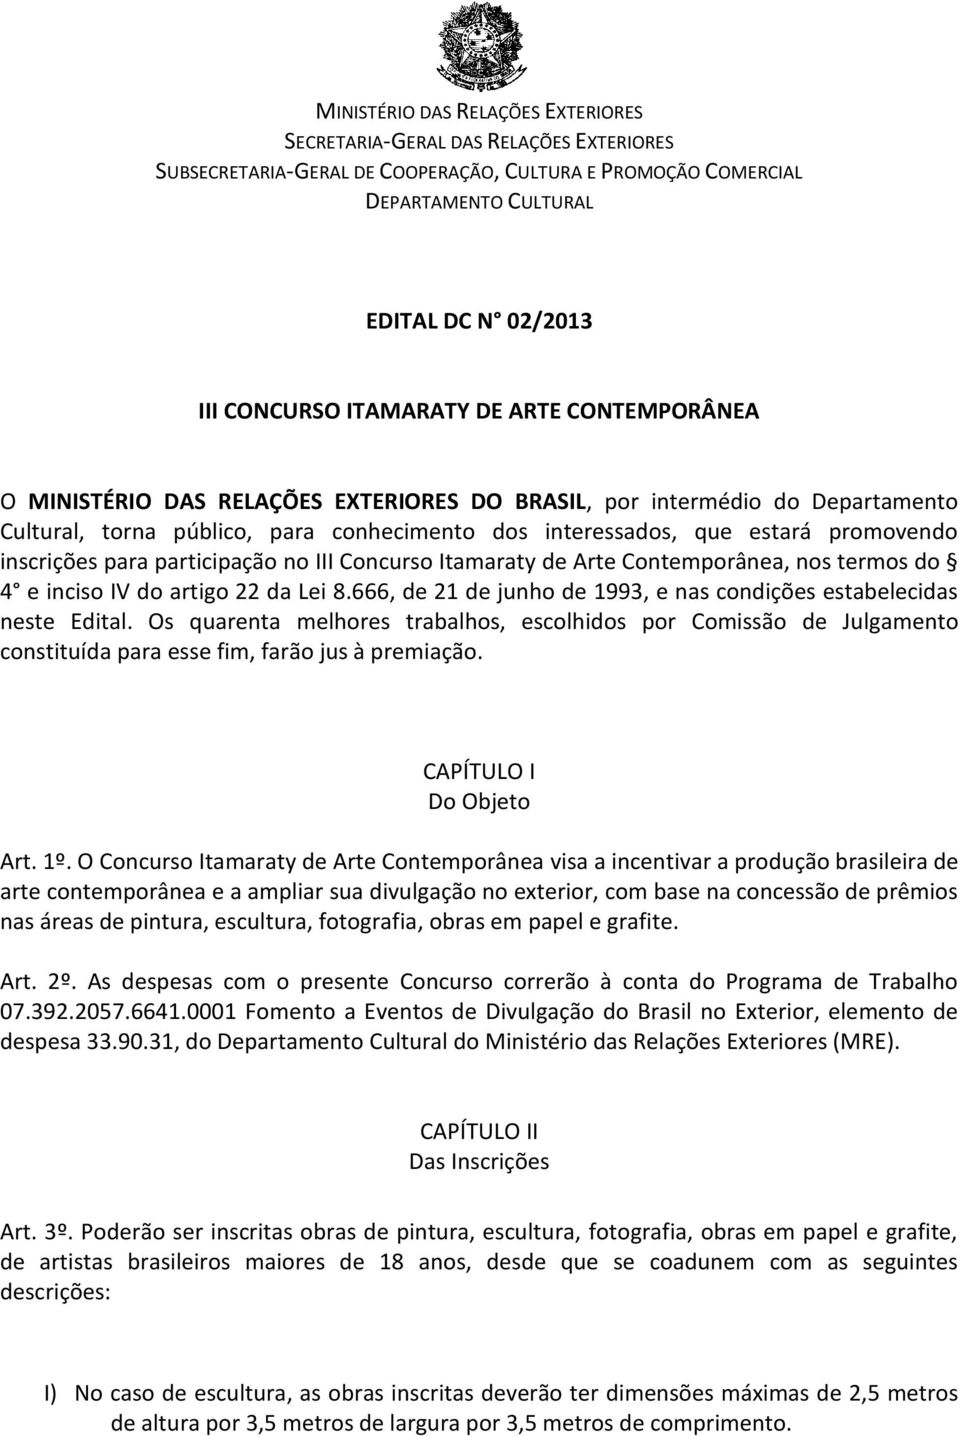 inscrições para participação no III Concurso Itamaraty de Arte Contemporânea, nos termos do 4 e inciso IV do artigo 22 da Lei 8.666, de 21 de junho de 1993, e nas condições estabelecidas neste Edital.